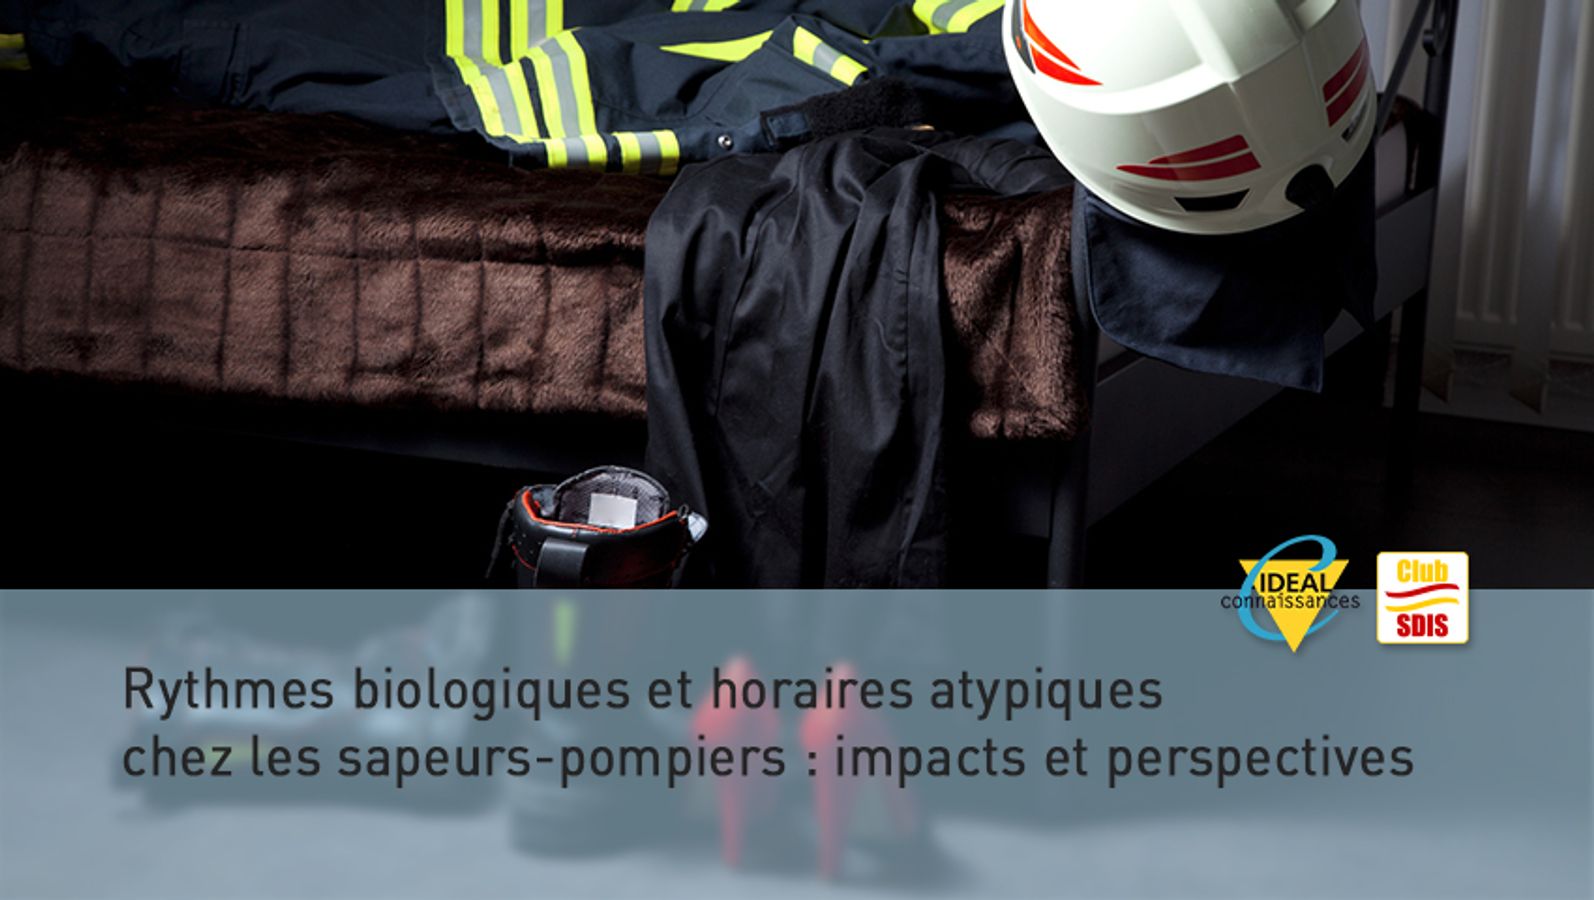 Rythmes biologiques et horaires atypiques chez les sapeurs-pompiers : impacts et perspectives.